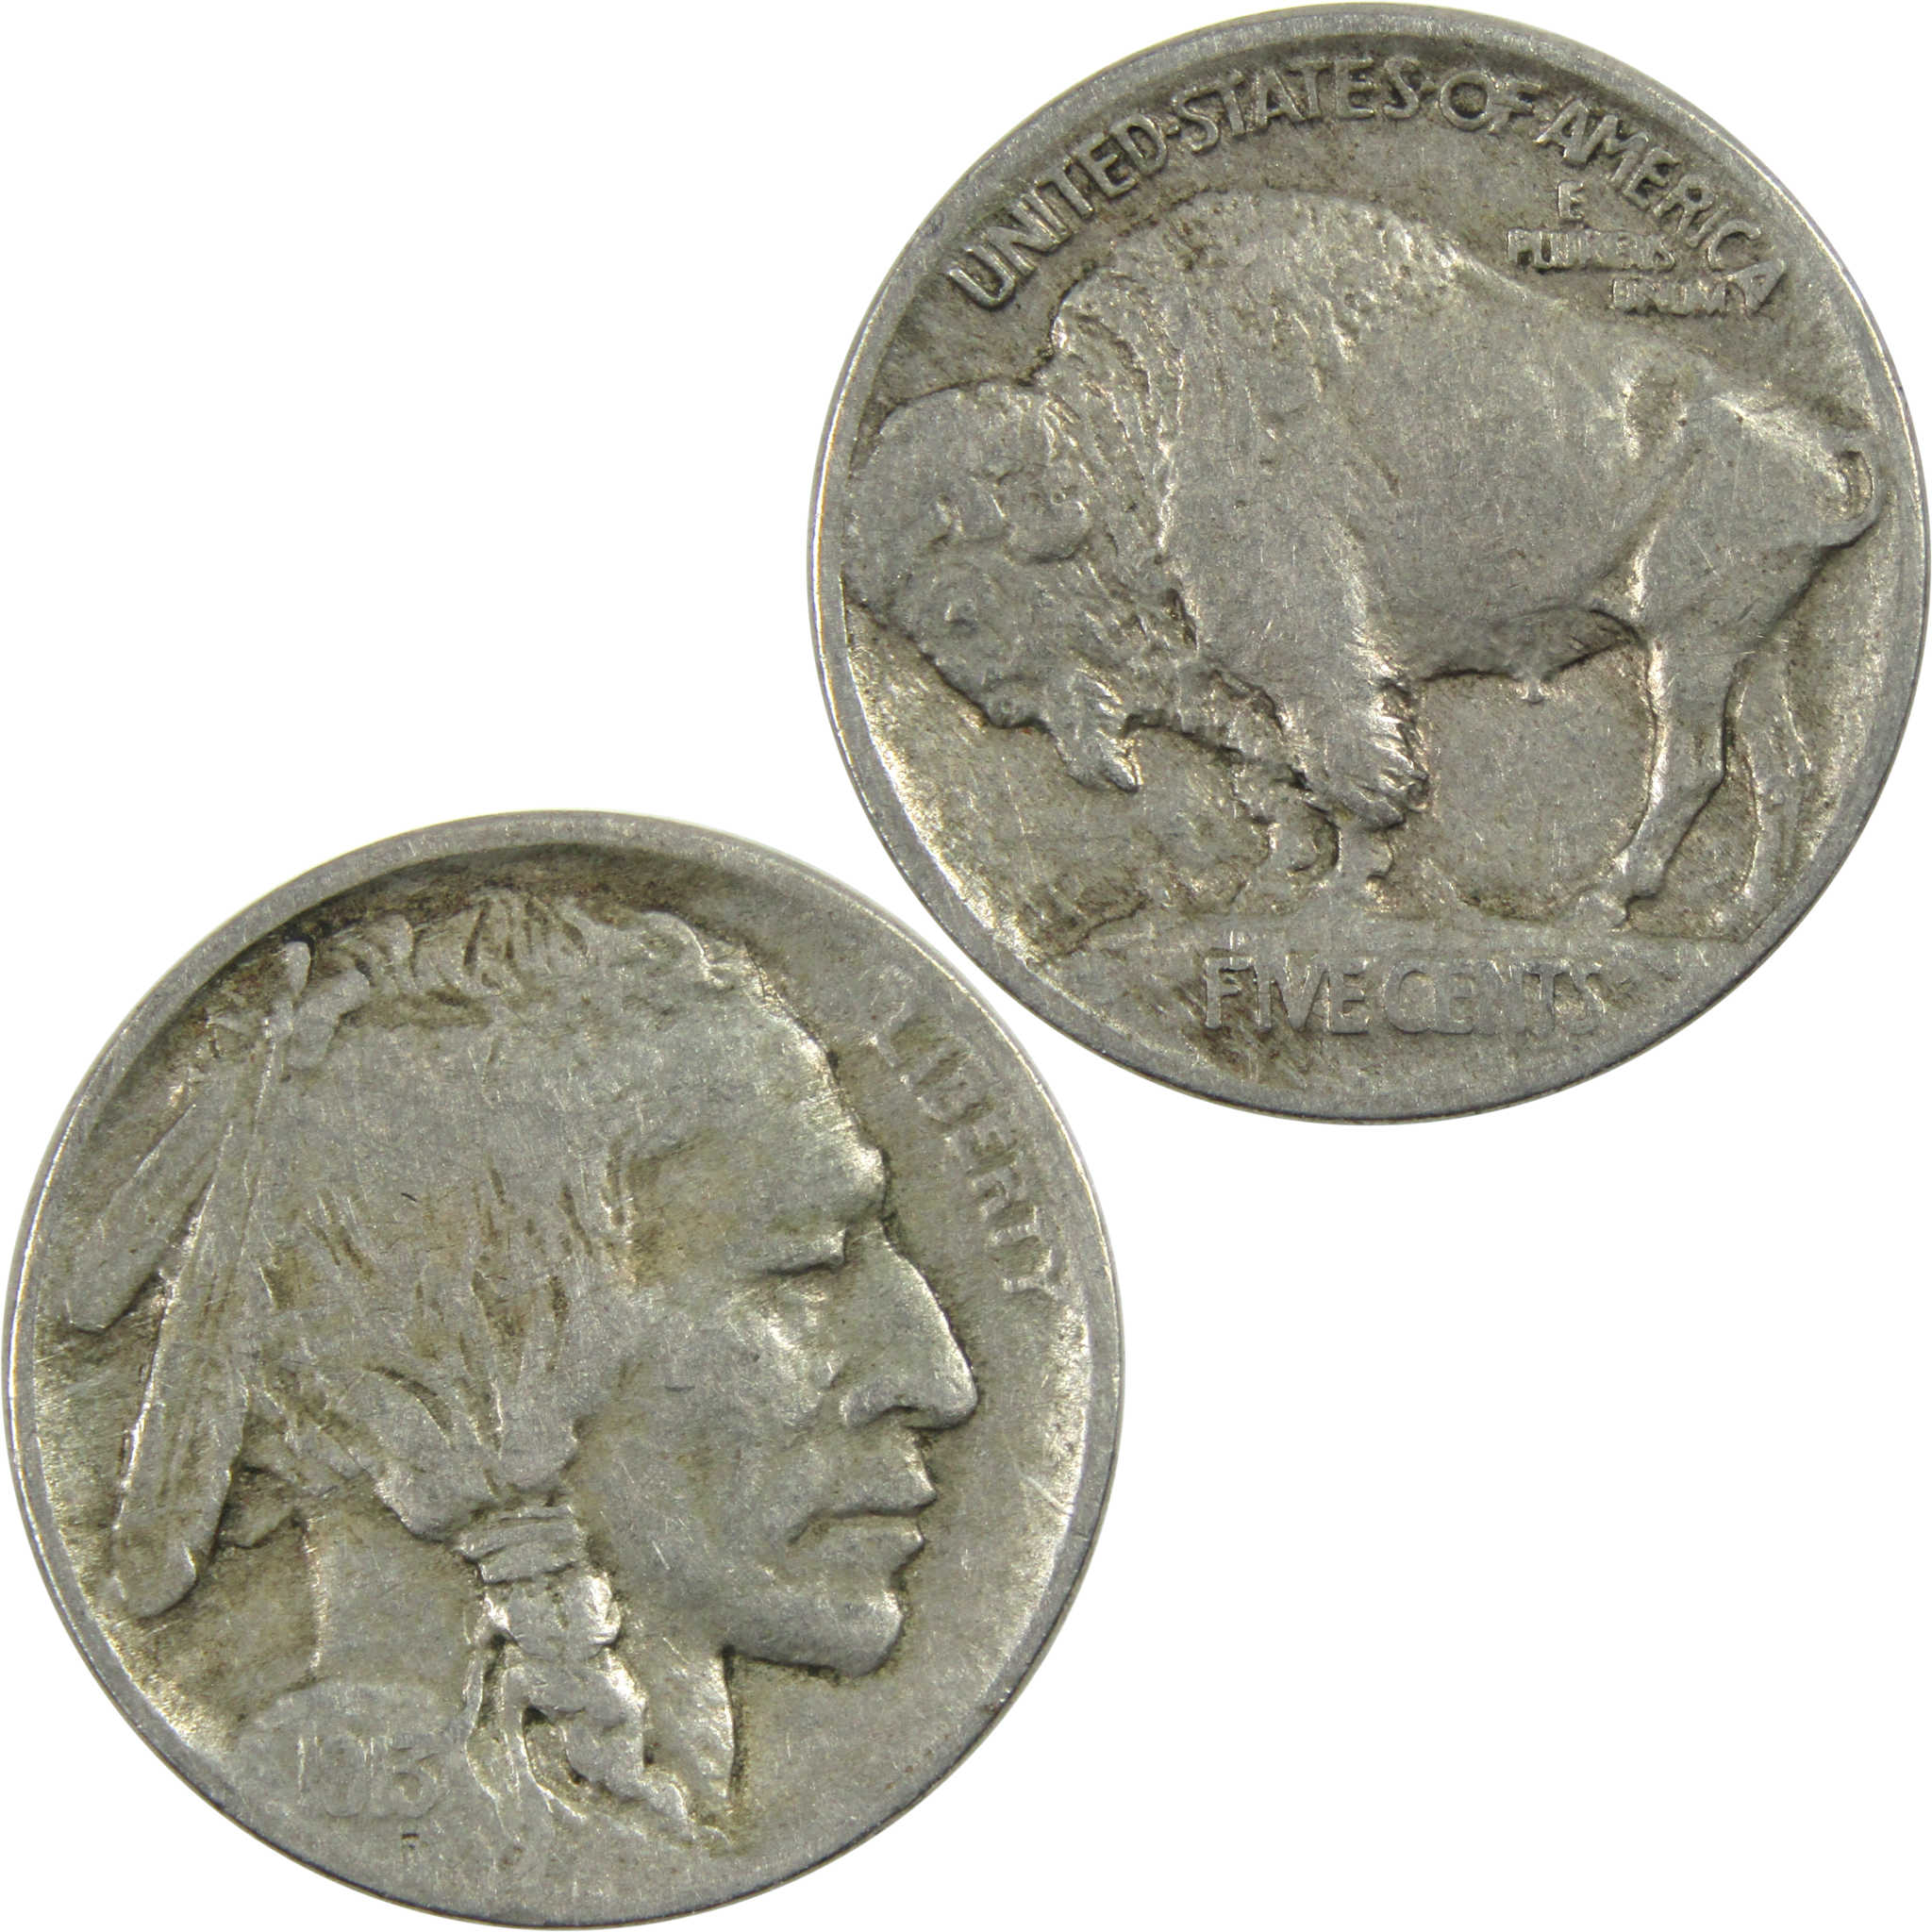 1913 Type 1 Indian Head Buffalo Nickel F Fine 5c Coin SKU:I12996